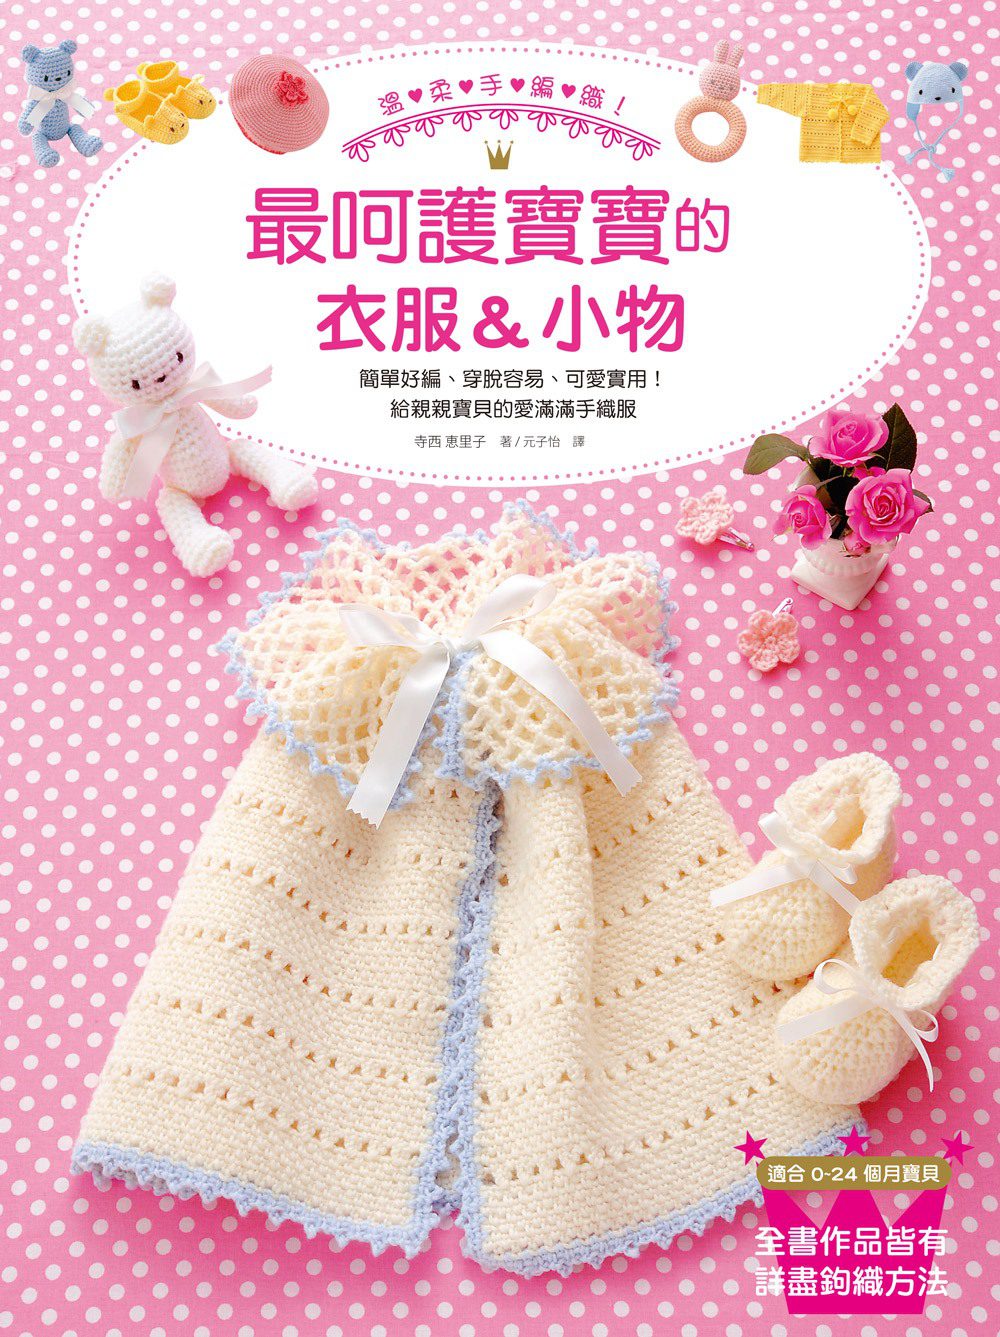 溫柔手編織!最呵護寶寶的衣服&小物：簡單好編、穿脫容易、可愛實用!一次擁有各式各樣的寶寶衣服&配件&玩具!